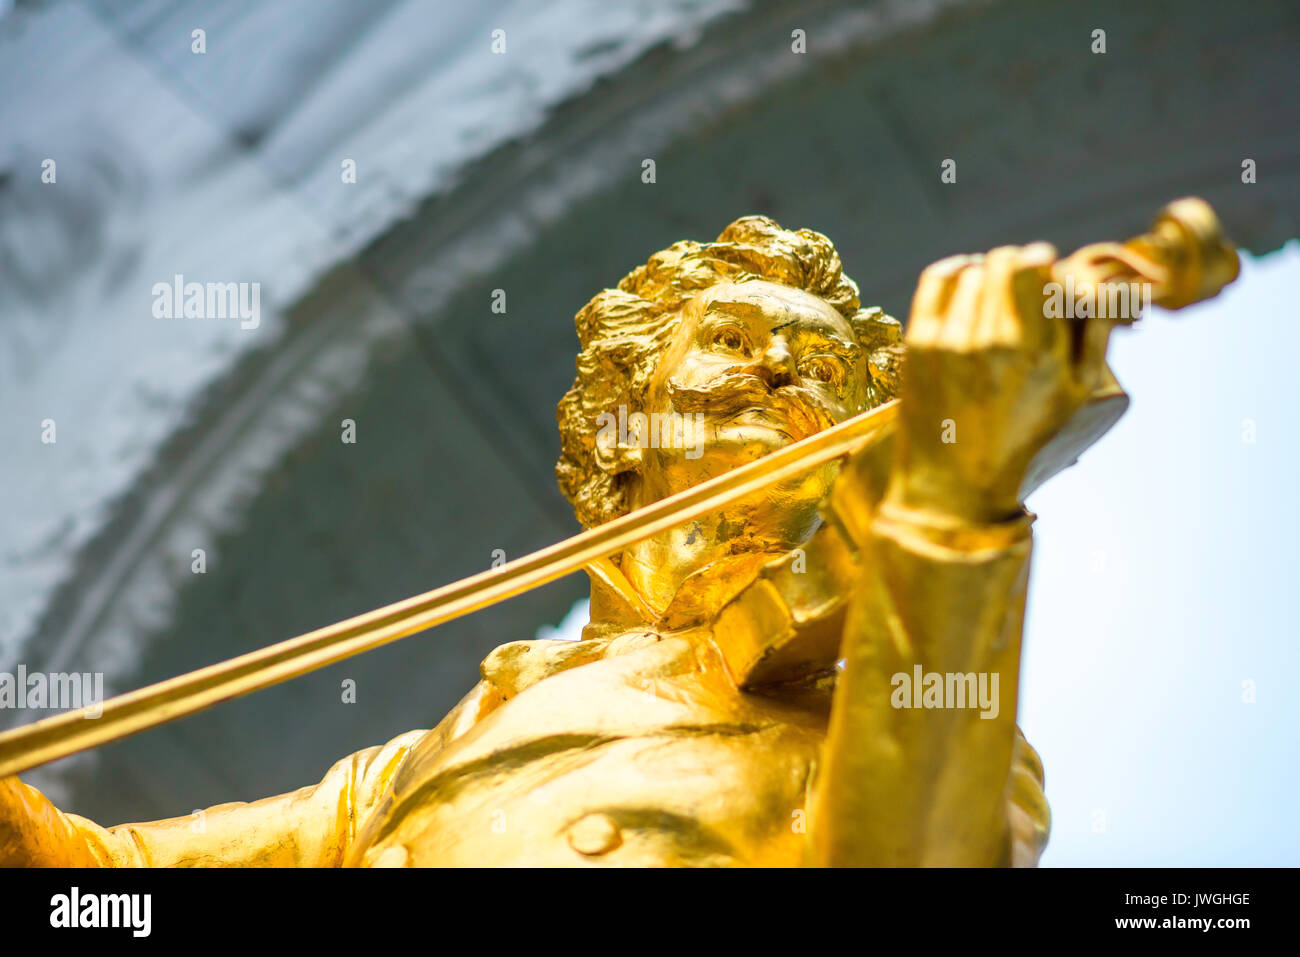 Johann Strauss Statue, die berühmte goldene Statue des Komponisten Johann Strauss im Stadtpark in der Innenstadt von Wien, Österreich. Stockfoto